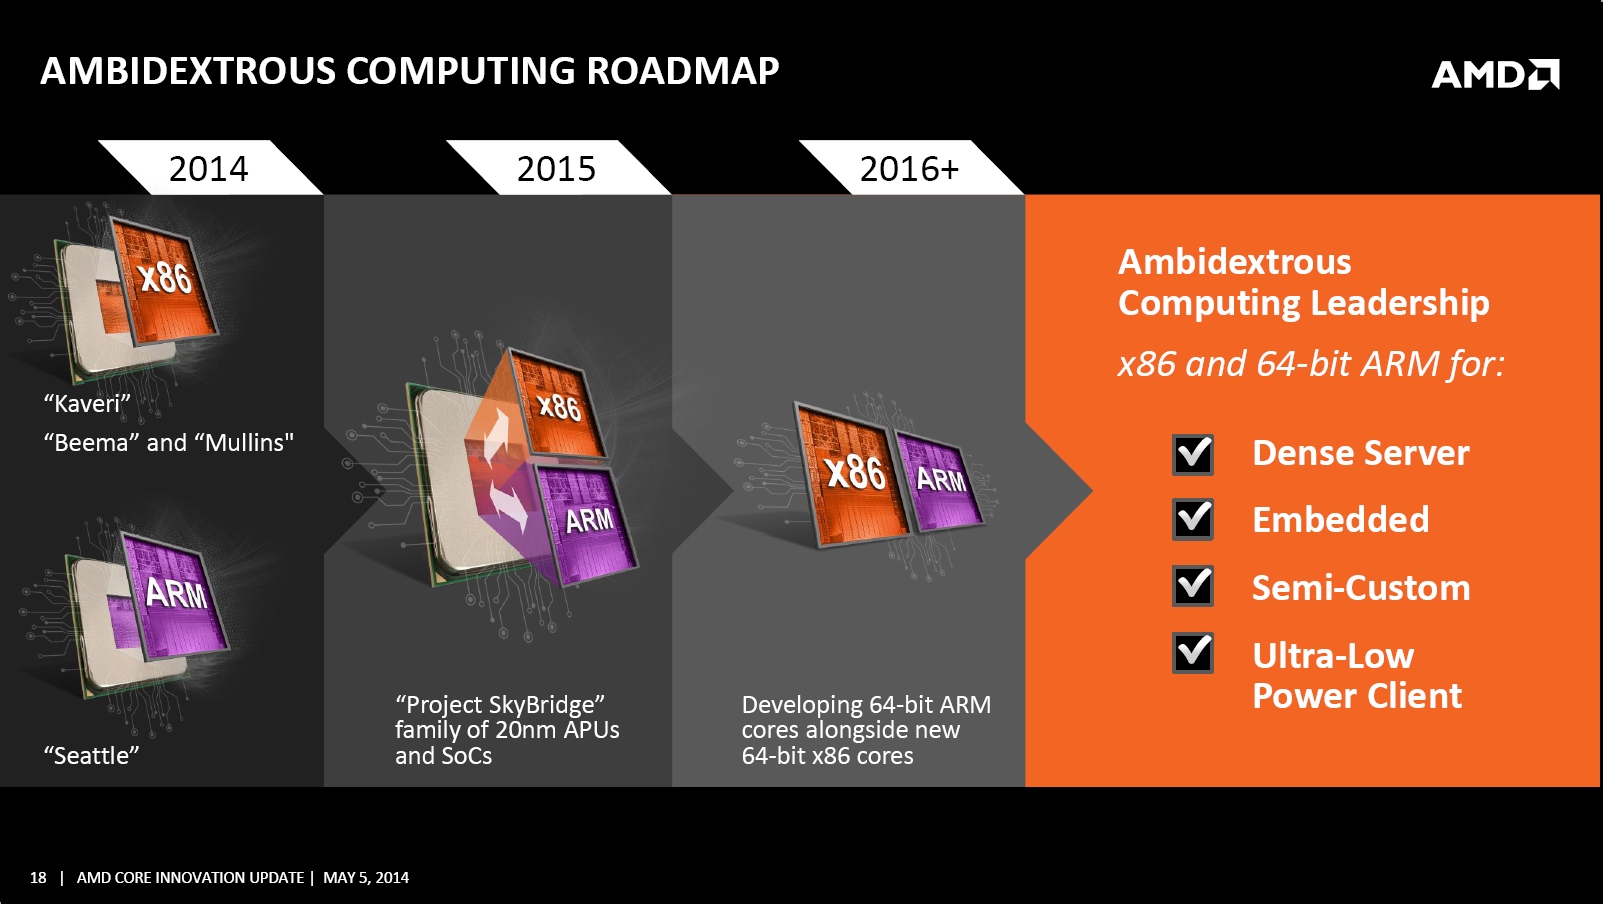 Immagine pubblicata in relazione al seguente contenuto: AMD presenta la roadmap basata sulla strategia ambidestra (ARM & x86) | Nome immagine: news21164_AMD-Core-Innovation-Update_2.jpg